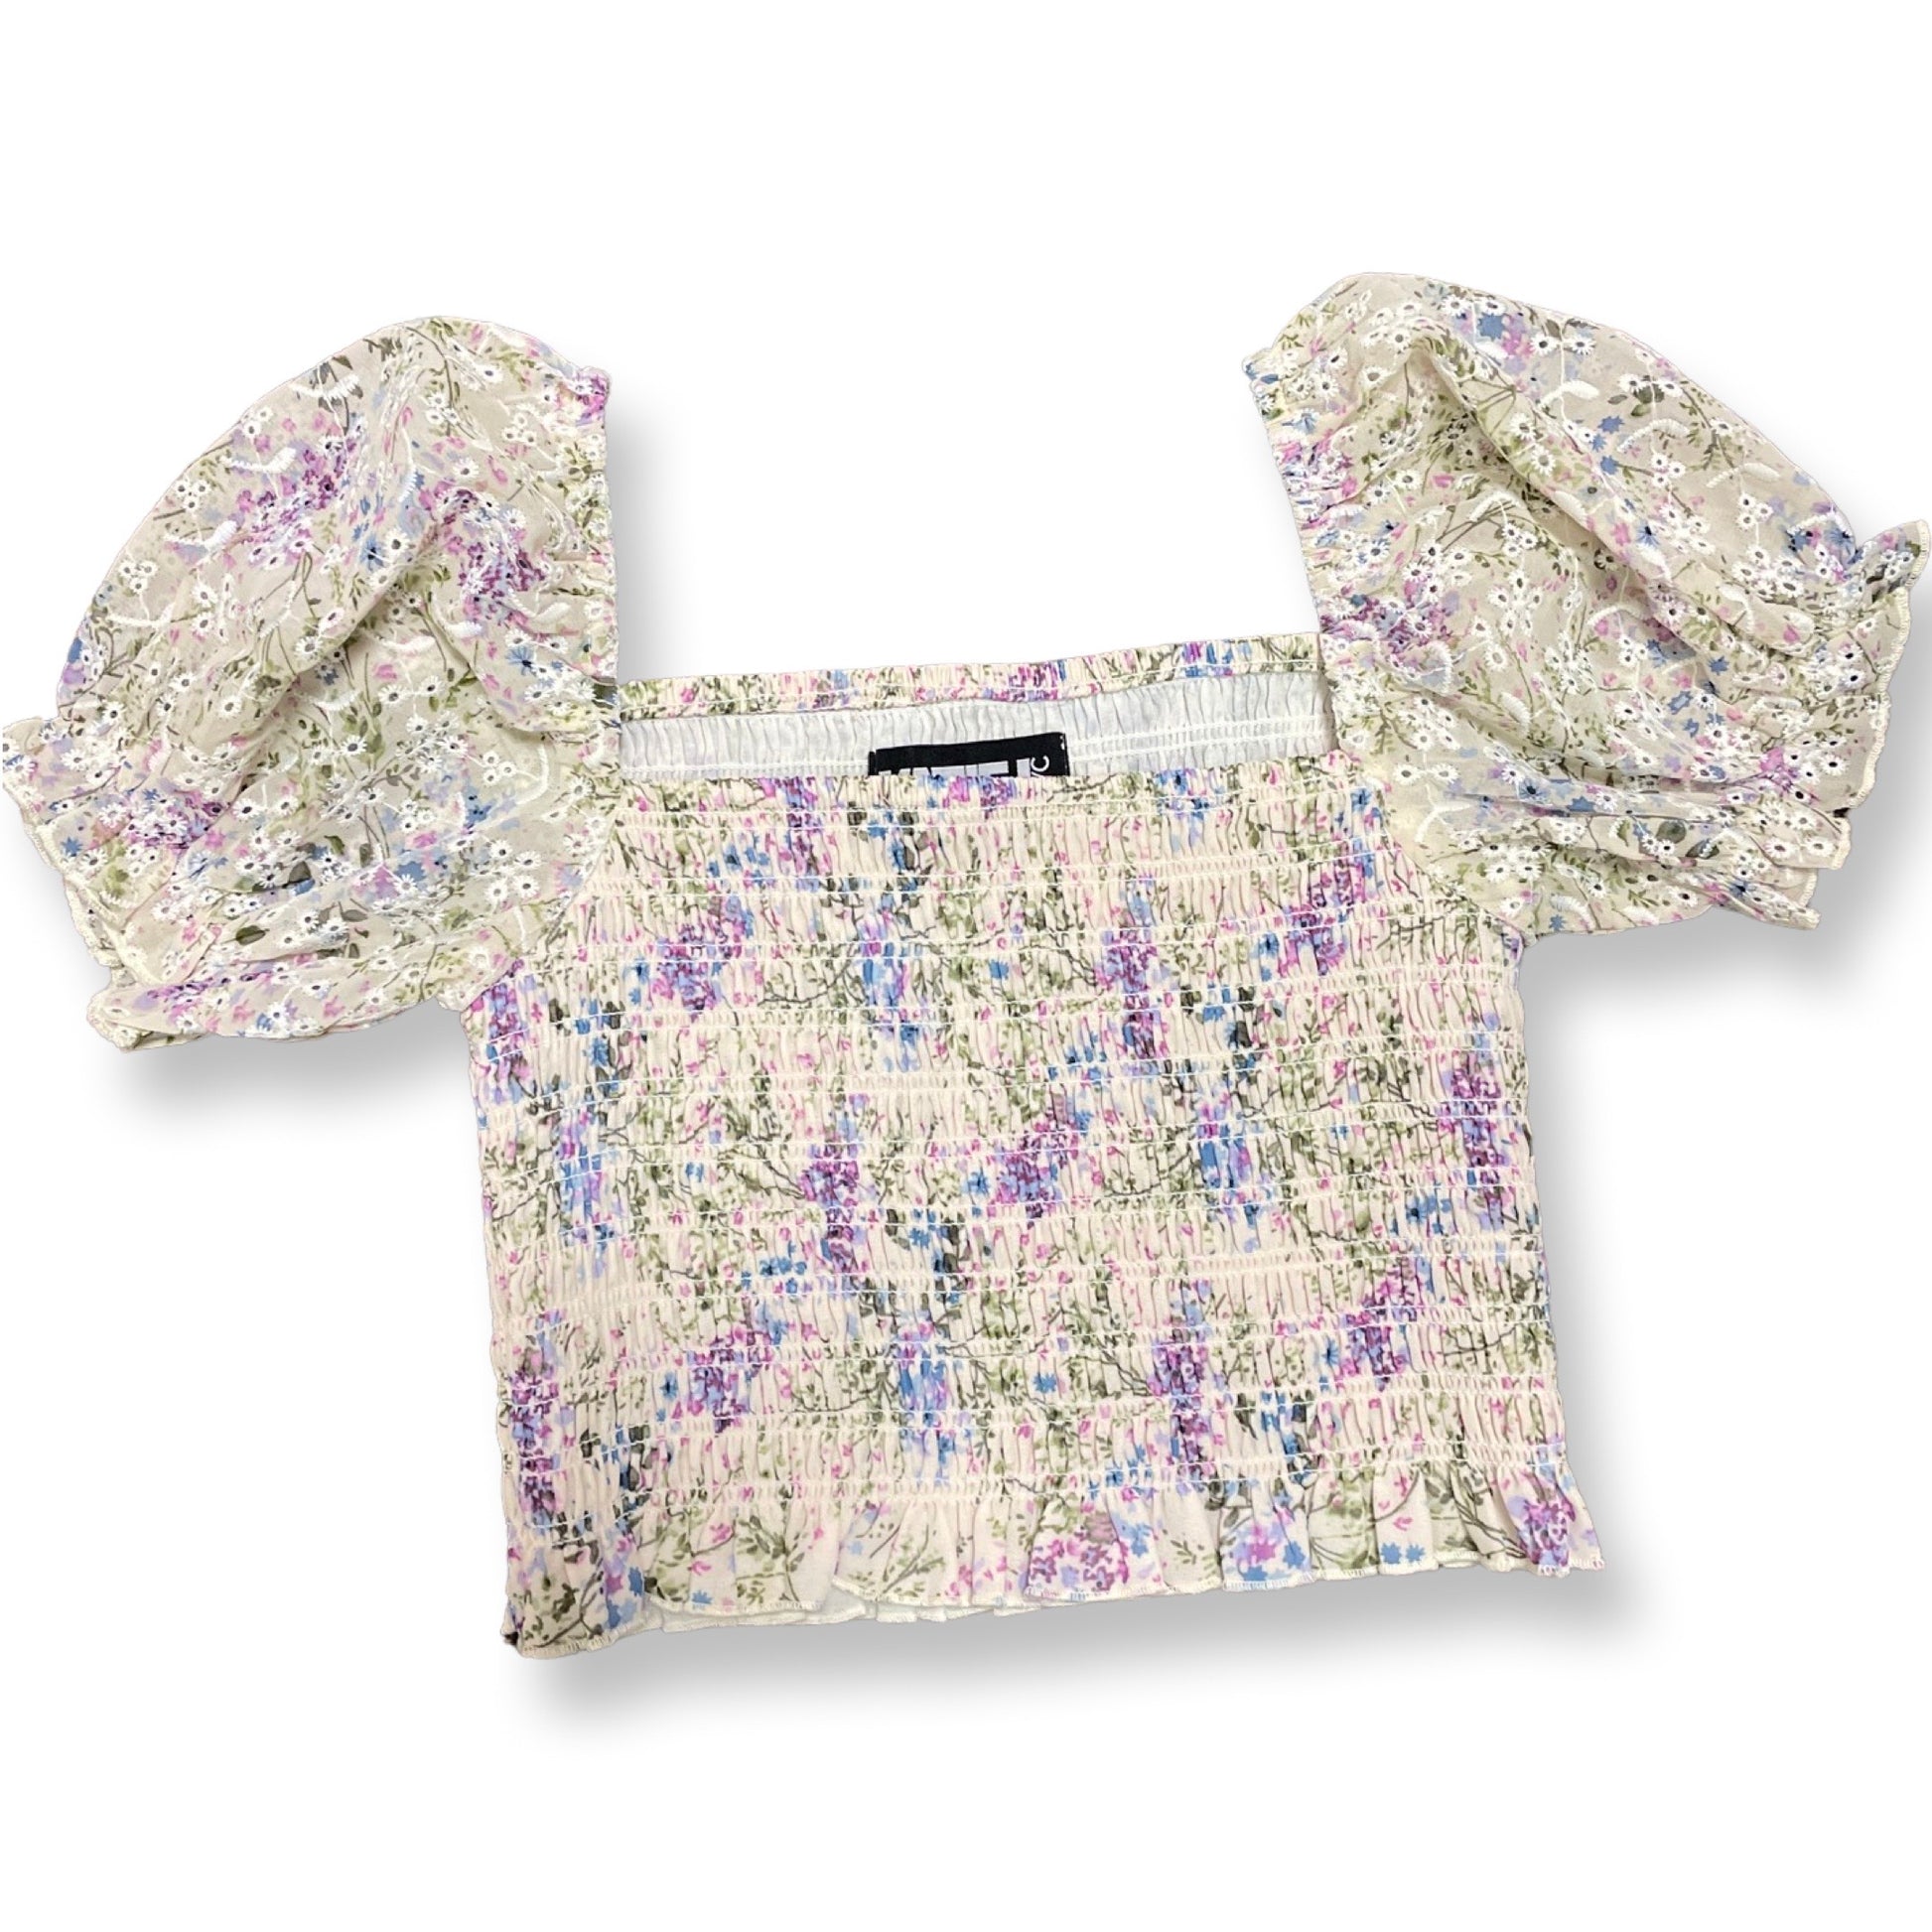 KatieJ NYC Tween Marlee Top in Neutral Floral blouse